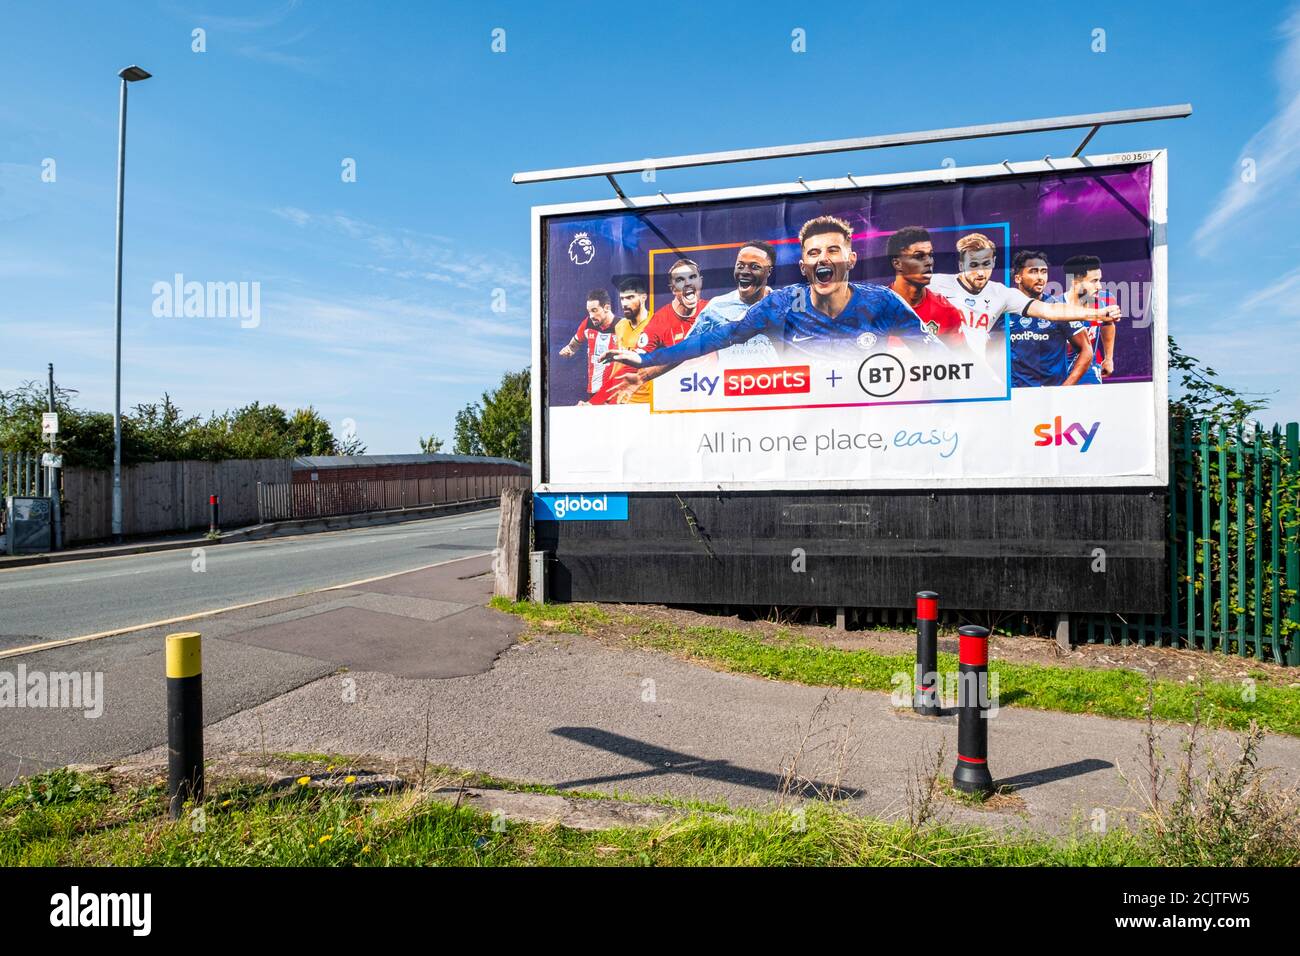 Sky Sports + BT Sport todo en un solo anuncio En la cartelera en Crewe Cheshire Reino Unido Foto de stock